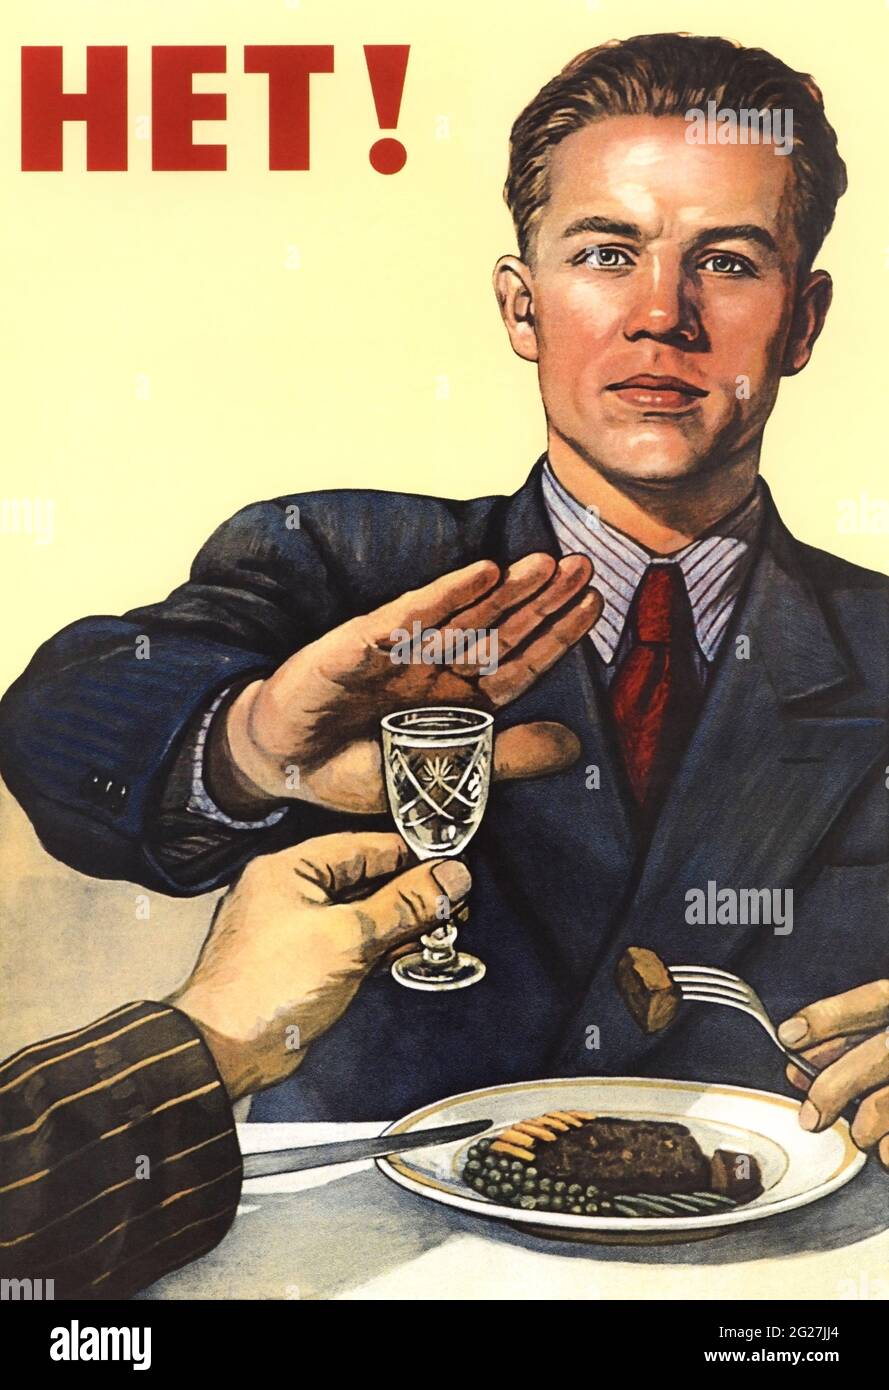 Impresión de la historia de la Unión Soviética de un hombre que rechaza una bebida, relacionada con la propaganda anti-alcohol. Foto de stock